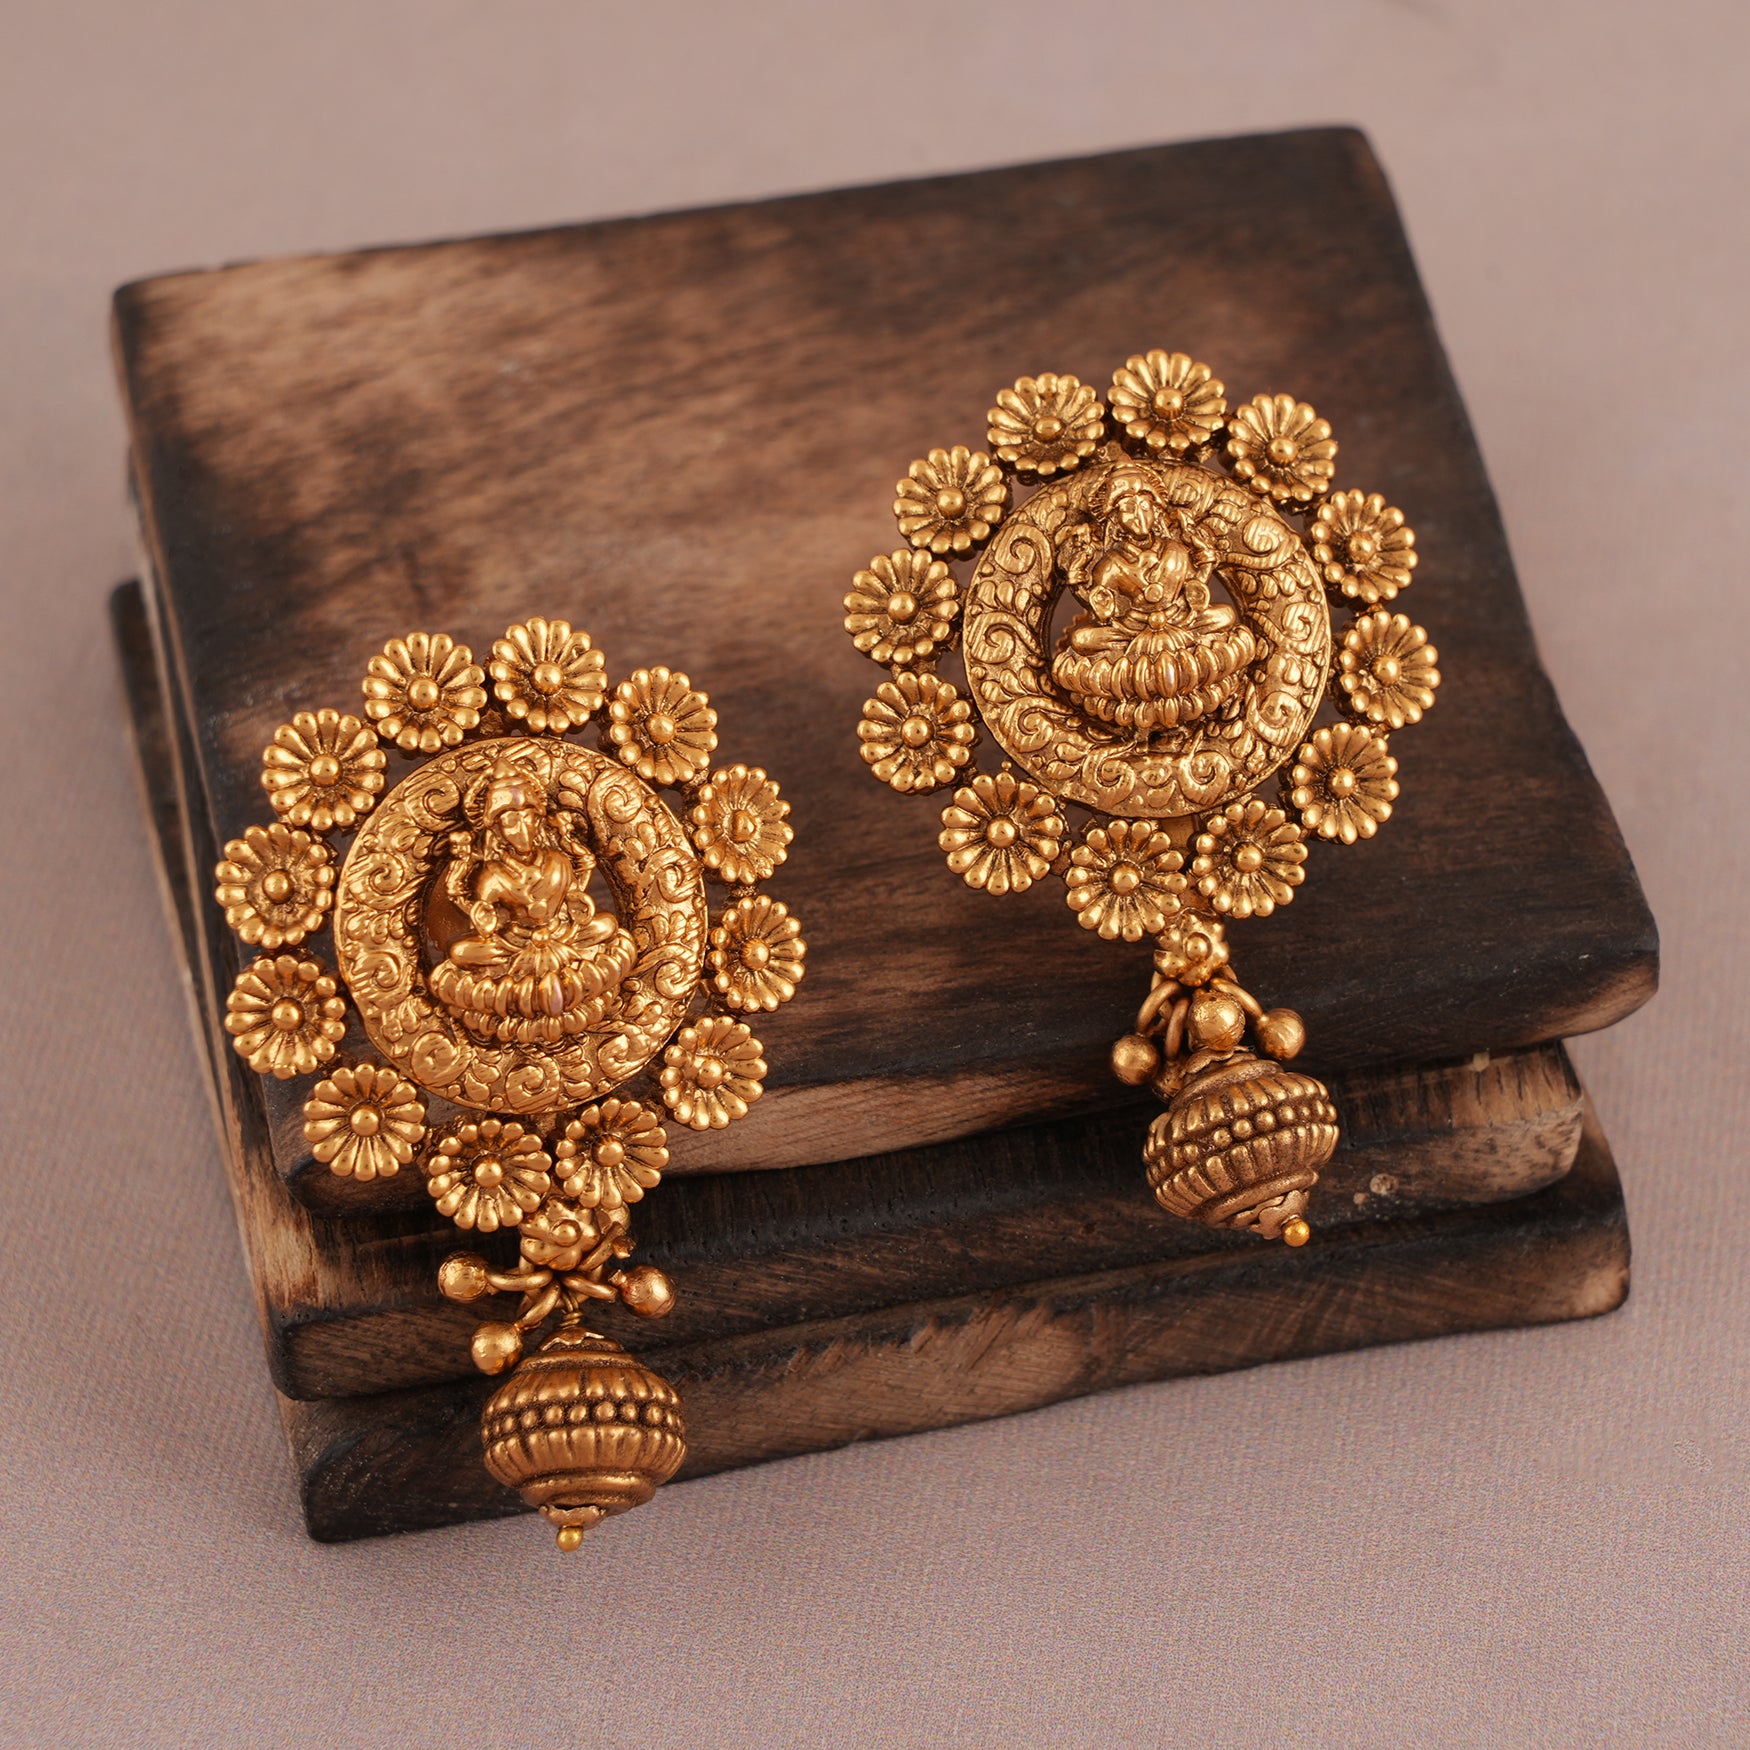 Long gorgeous antique gold plain Maa Lakshmi necklace set | Temple Jewellery